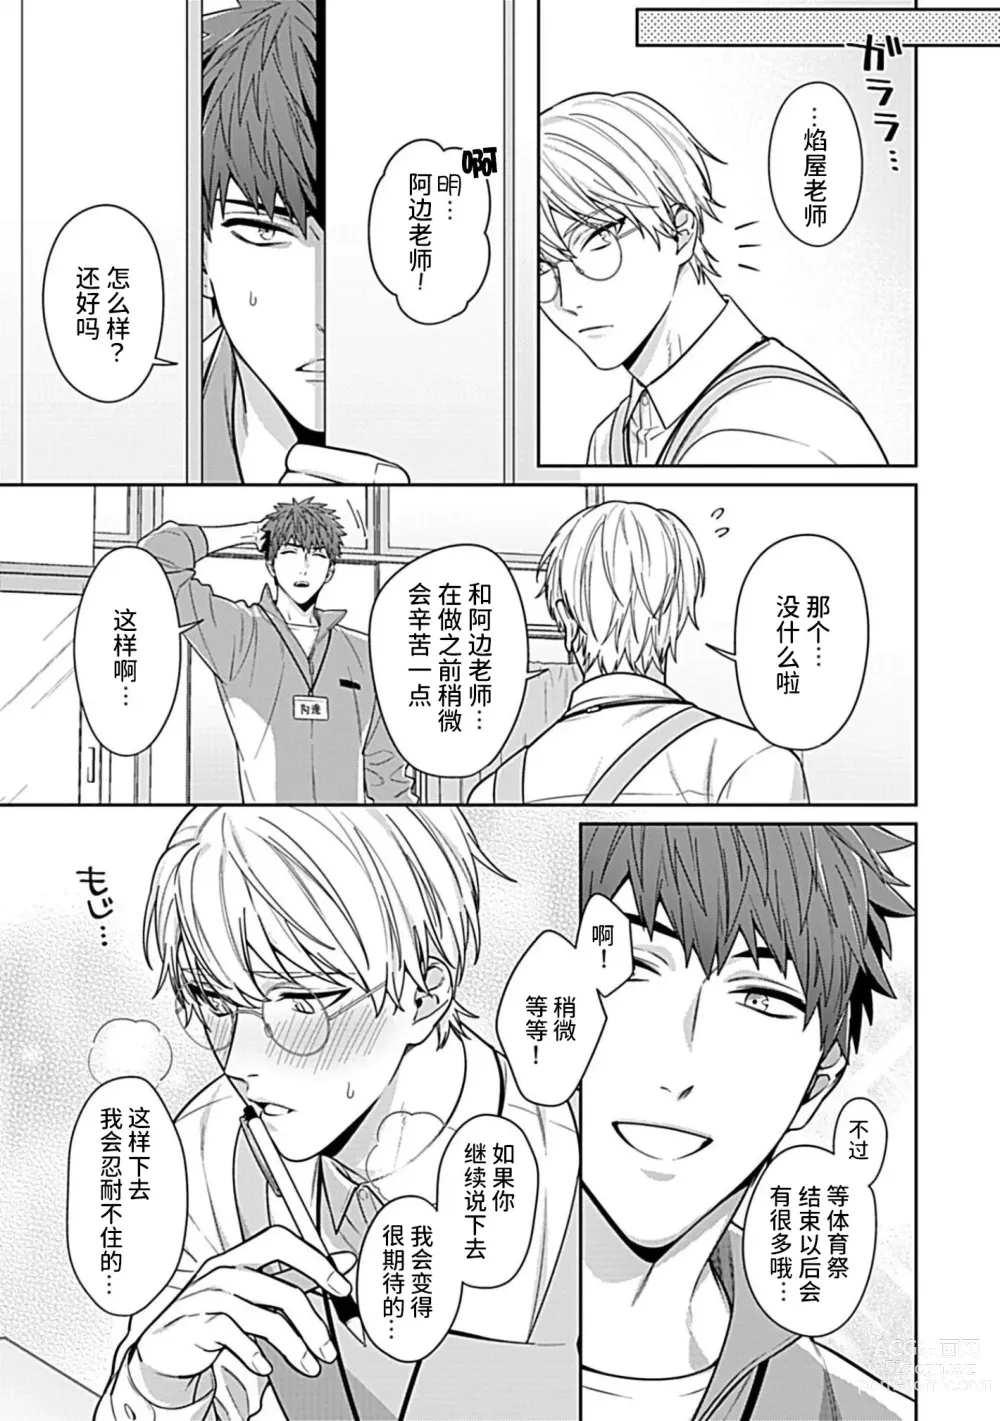 Page 7 of manga Sensei, Shokuji wa Bed no Ue de 4